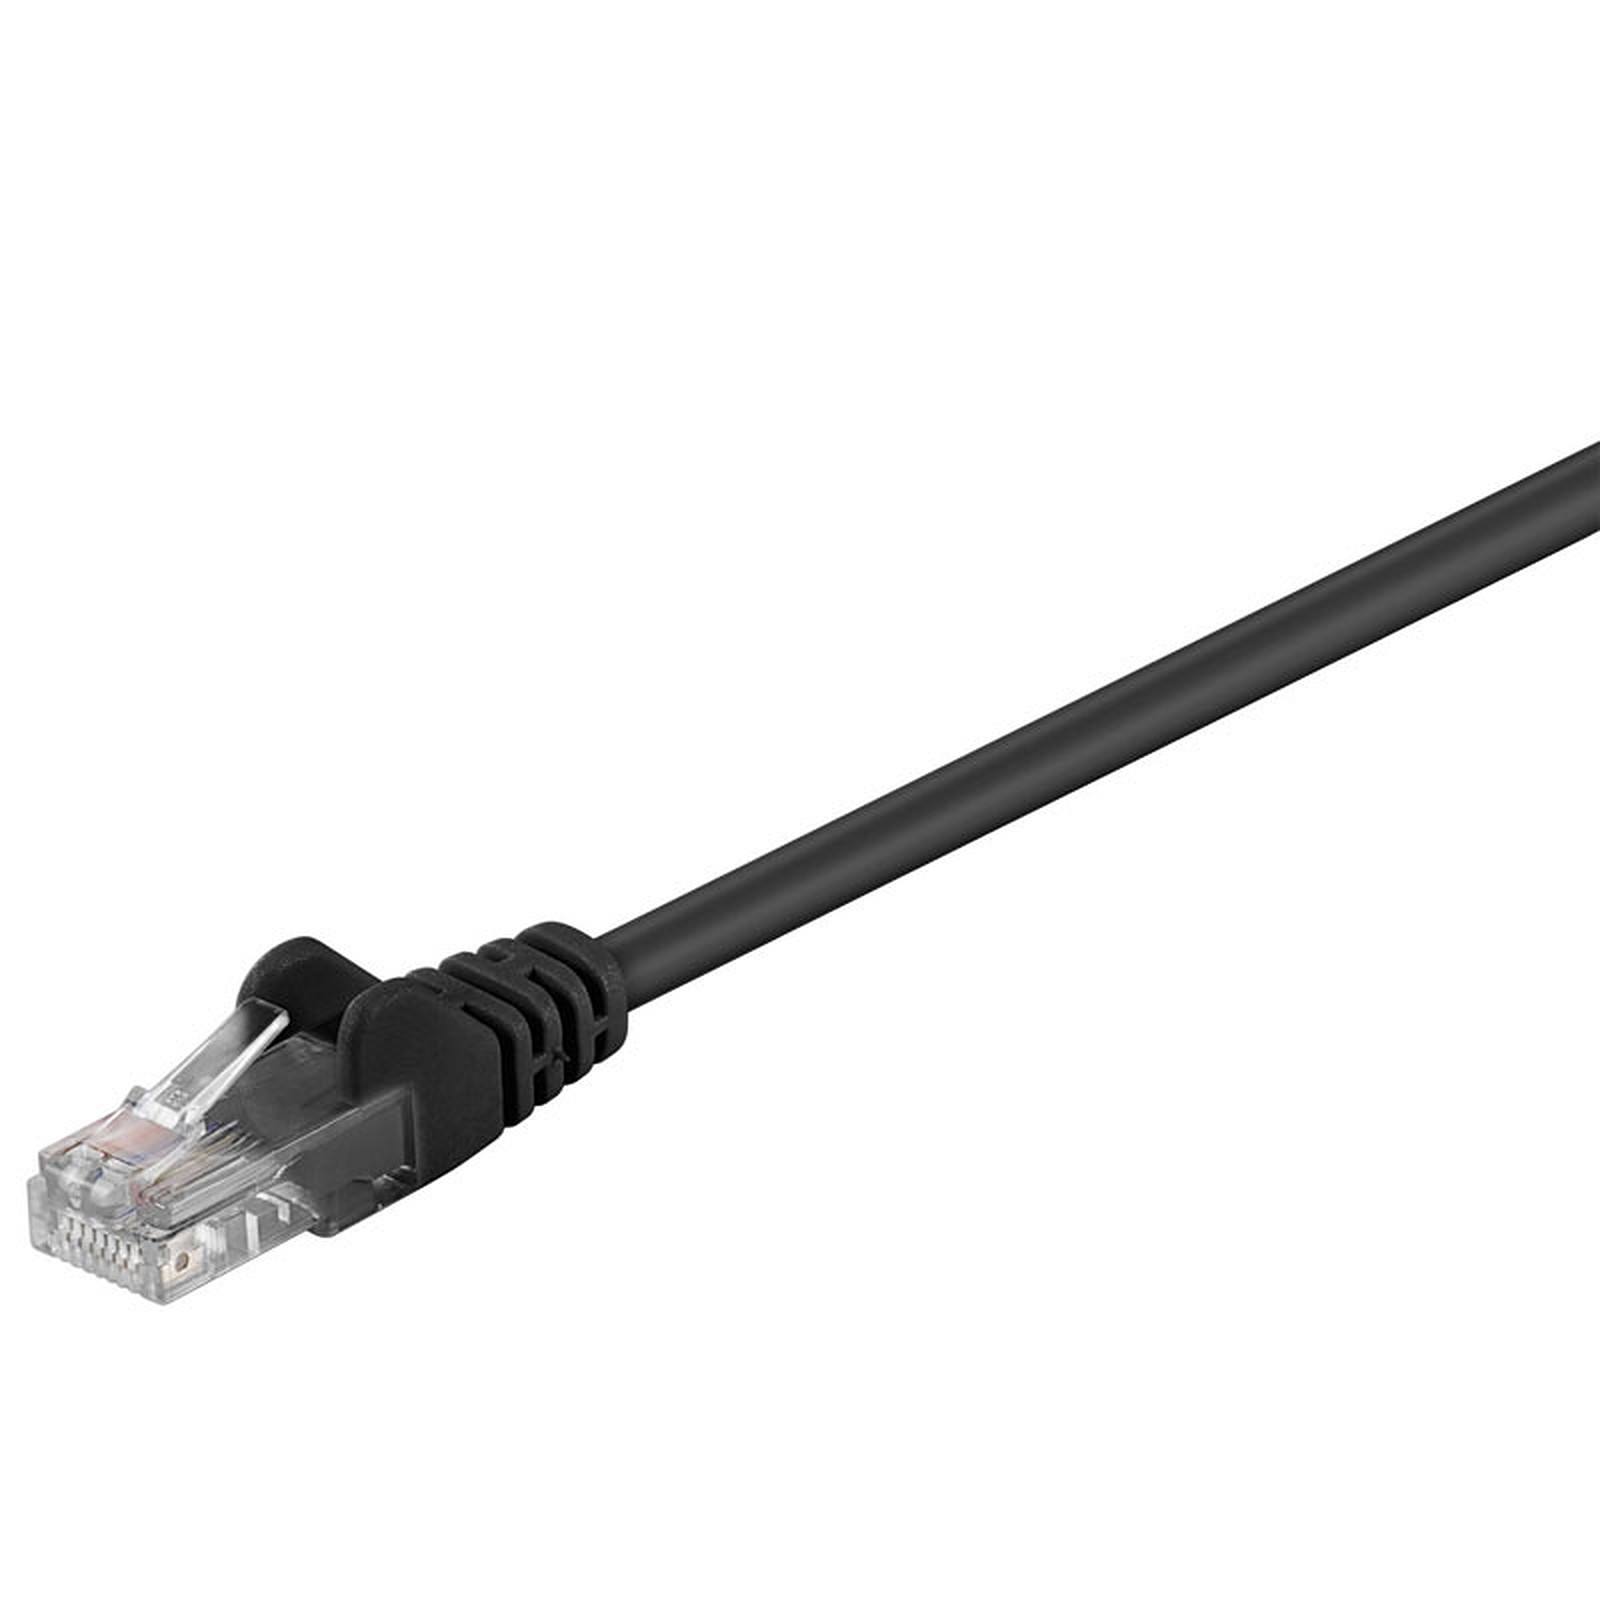 Cable RJ45 categorie 5e U/UTP 0.3 m (Noir) - Cable RJ45 Generique